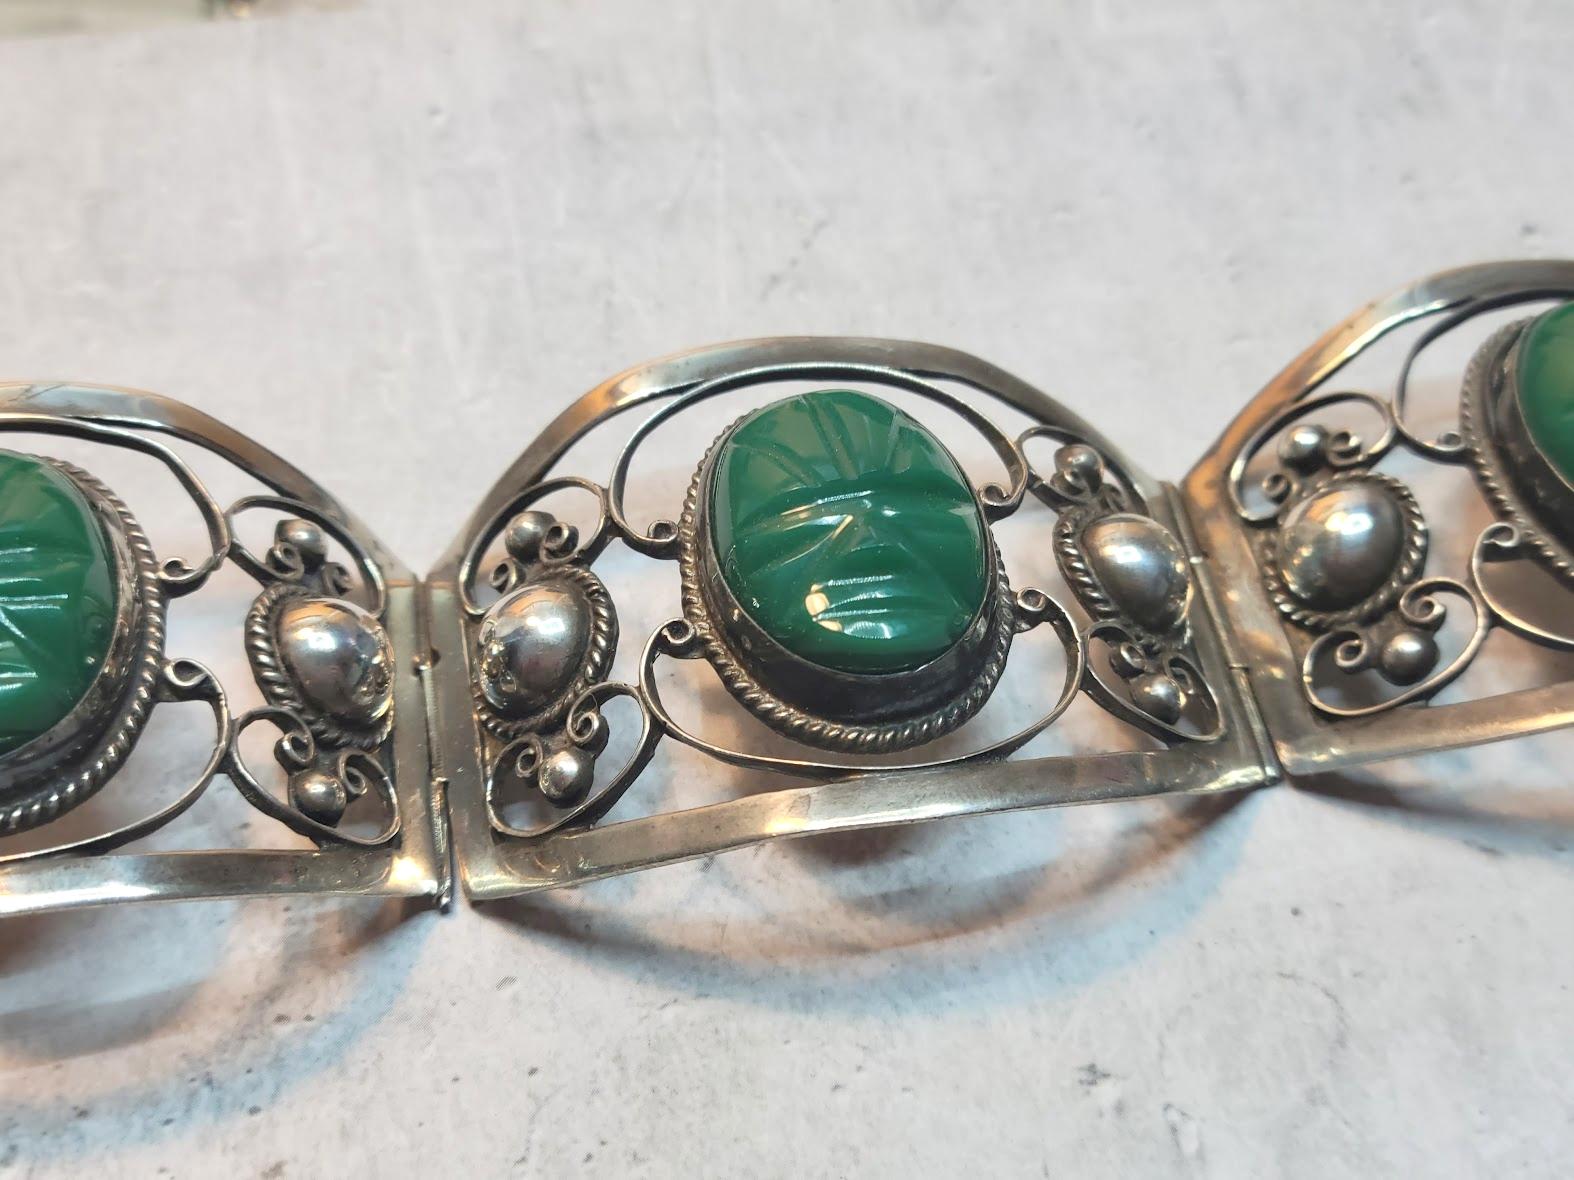 Un bracelet mexicain composé d'argent fin avec des cabochons d'onyx vert en forme de masques aztèques.
Le bracelet comporte des panneaux décoratifs en argent avec des perles épaisses, des tourbillons et des masques aztèques ovales en onyx. Ce